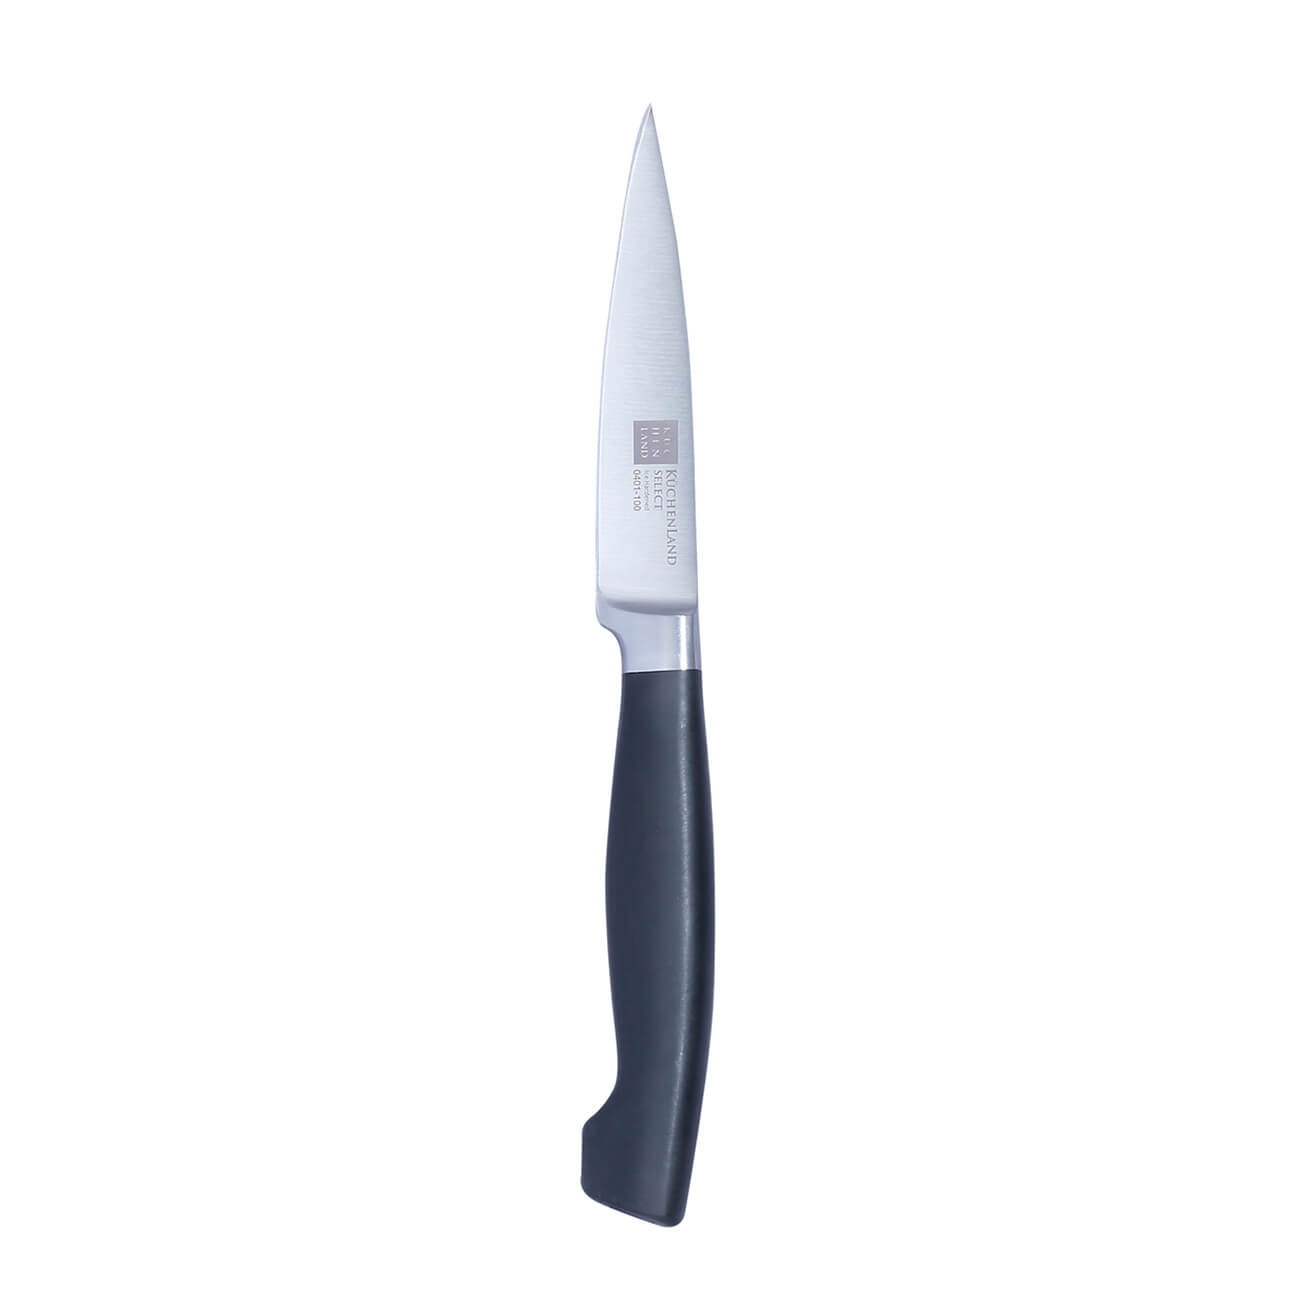 Нож для чистки овощей, 10 см, сталь/пластик, Select изображение № 1